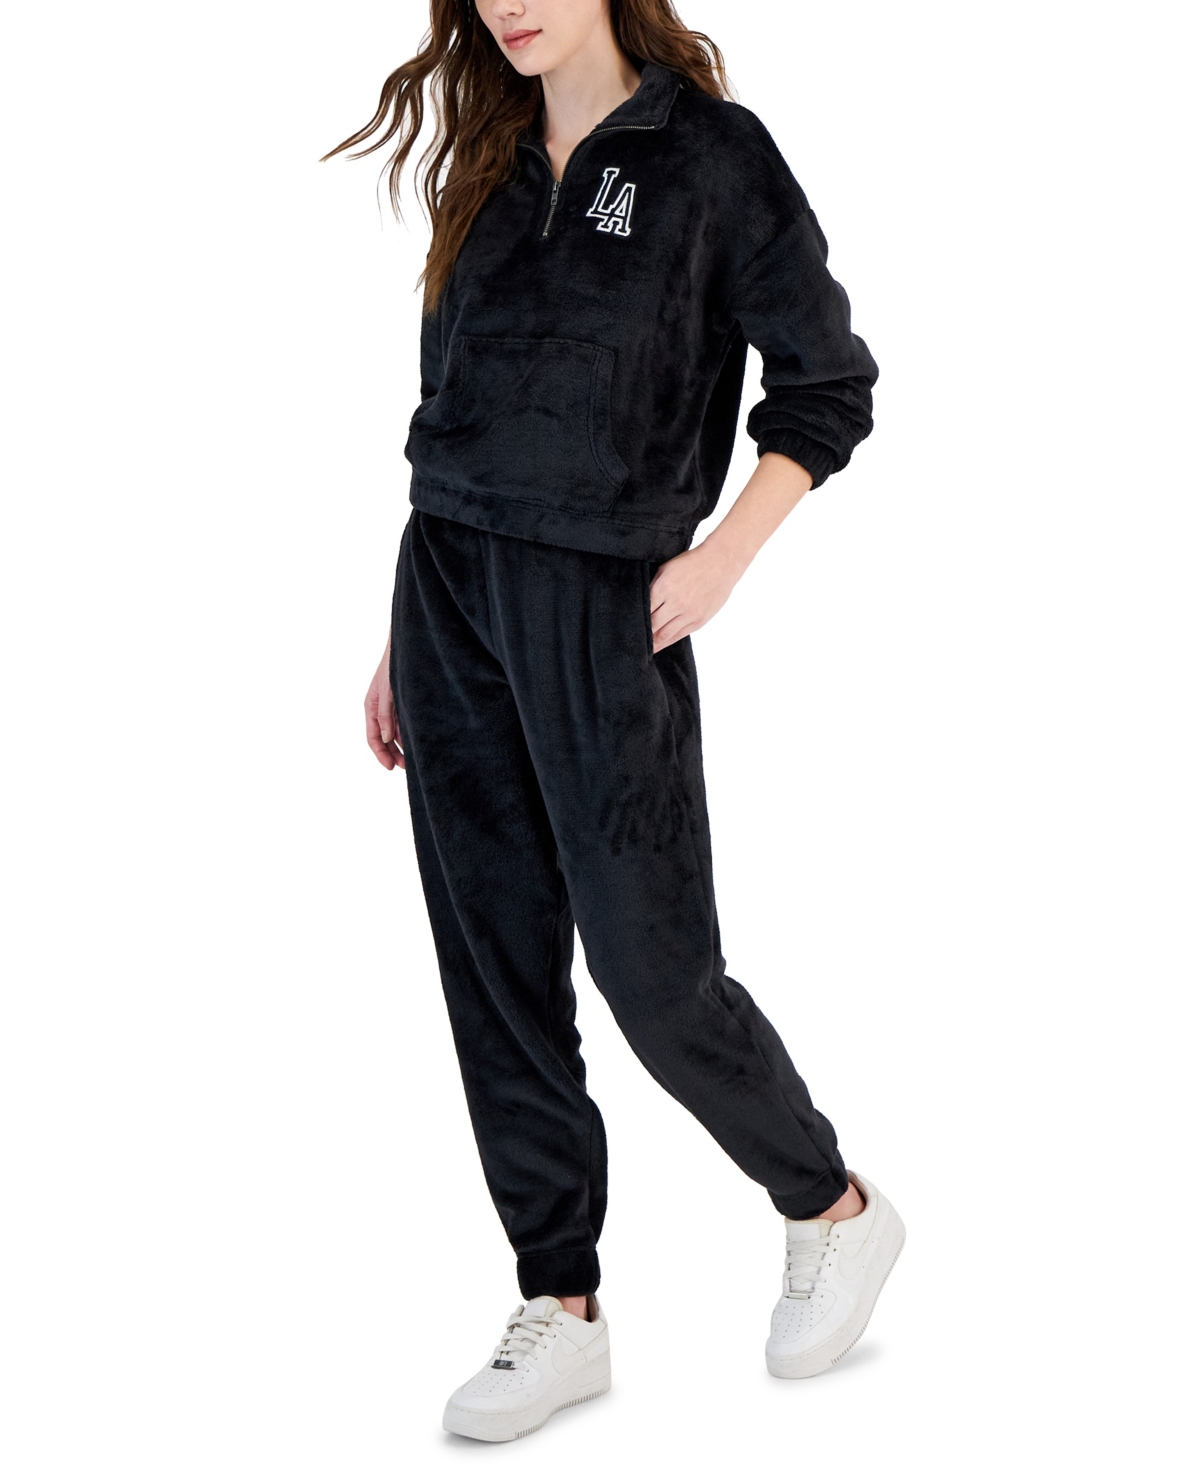 Hippie Rose Juniors' Super Soft Quarter-zip Pullover Sweatshirt In Black